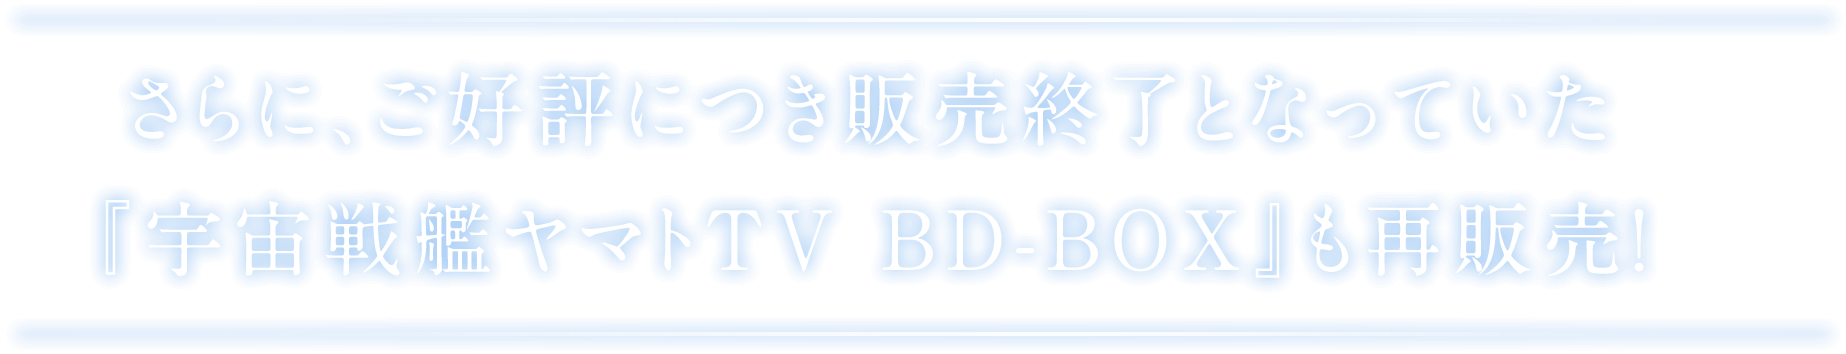 さらに、現在生産中止となっている『宇宙戦艦ヤマトTV BD-BOX スタンダード版』も再販売!